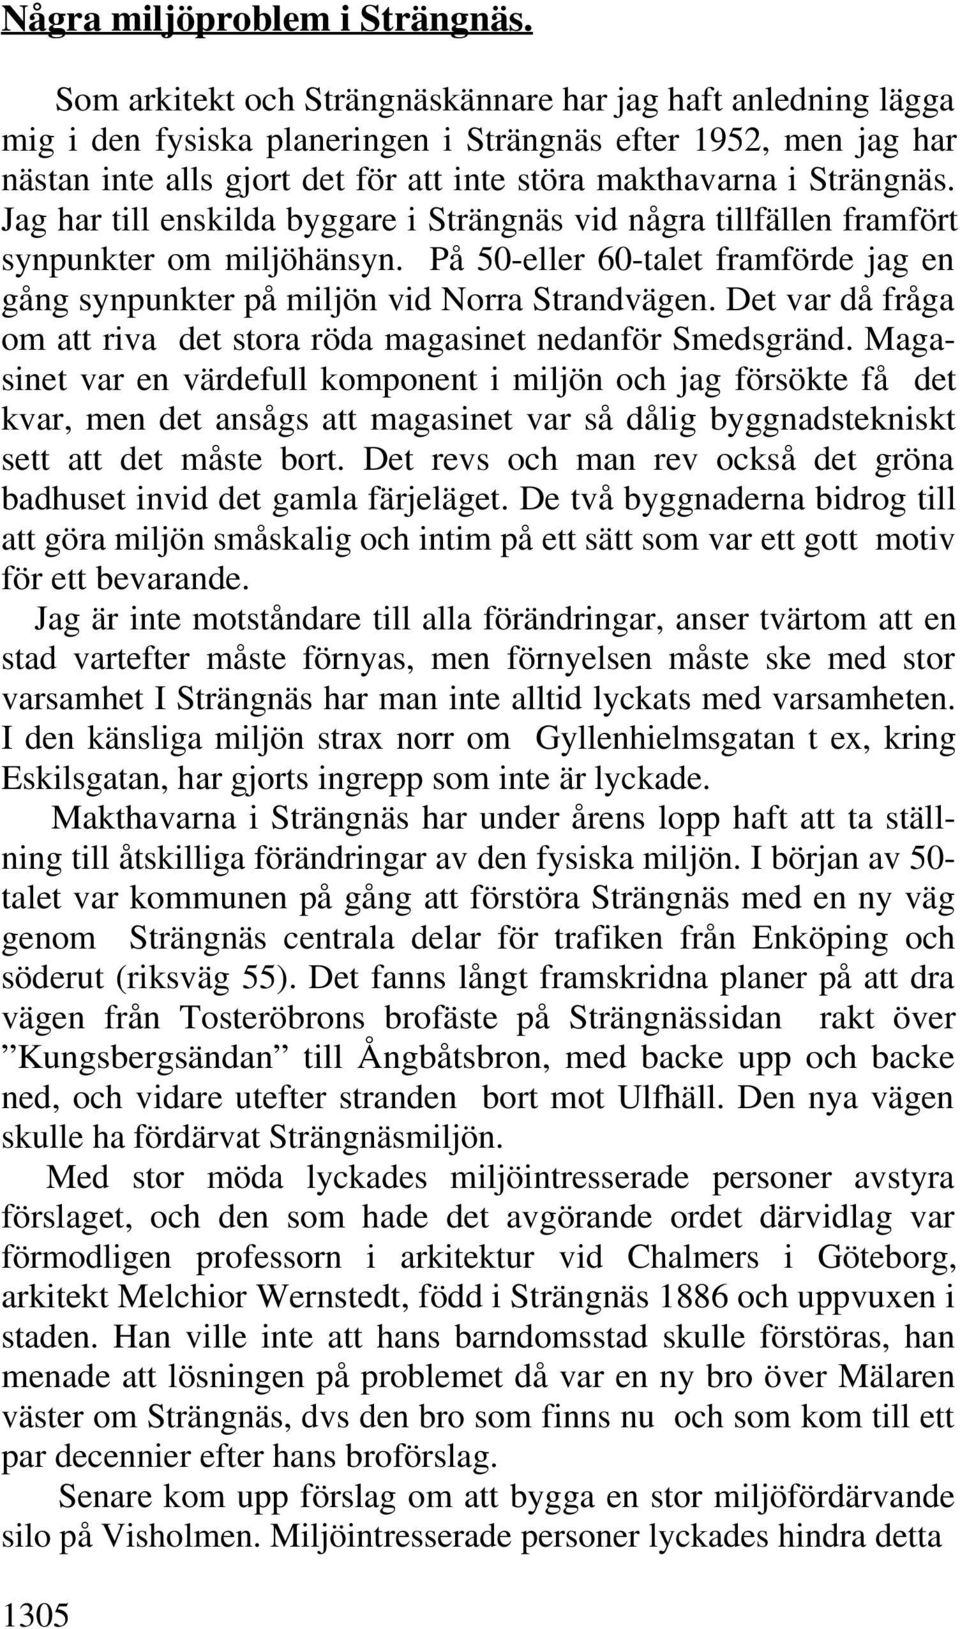 Jag har till enskilda byggare i Strängnäs vid några tillfällen framfört synpunkter om miljöhänsyn. På 50-eller 60-talet framförde jag en gång synpunkter på miljön vid Norra Strandvägen.